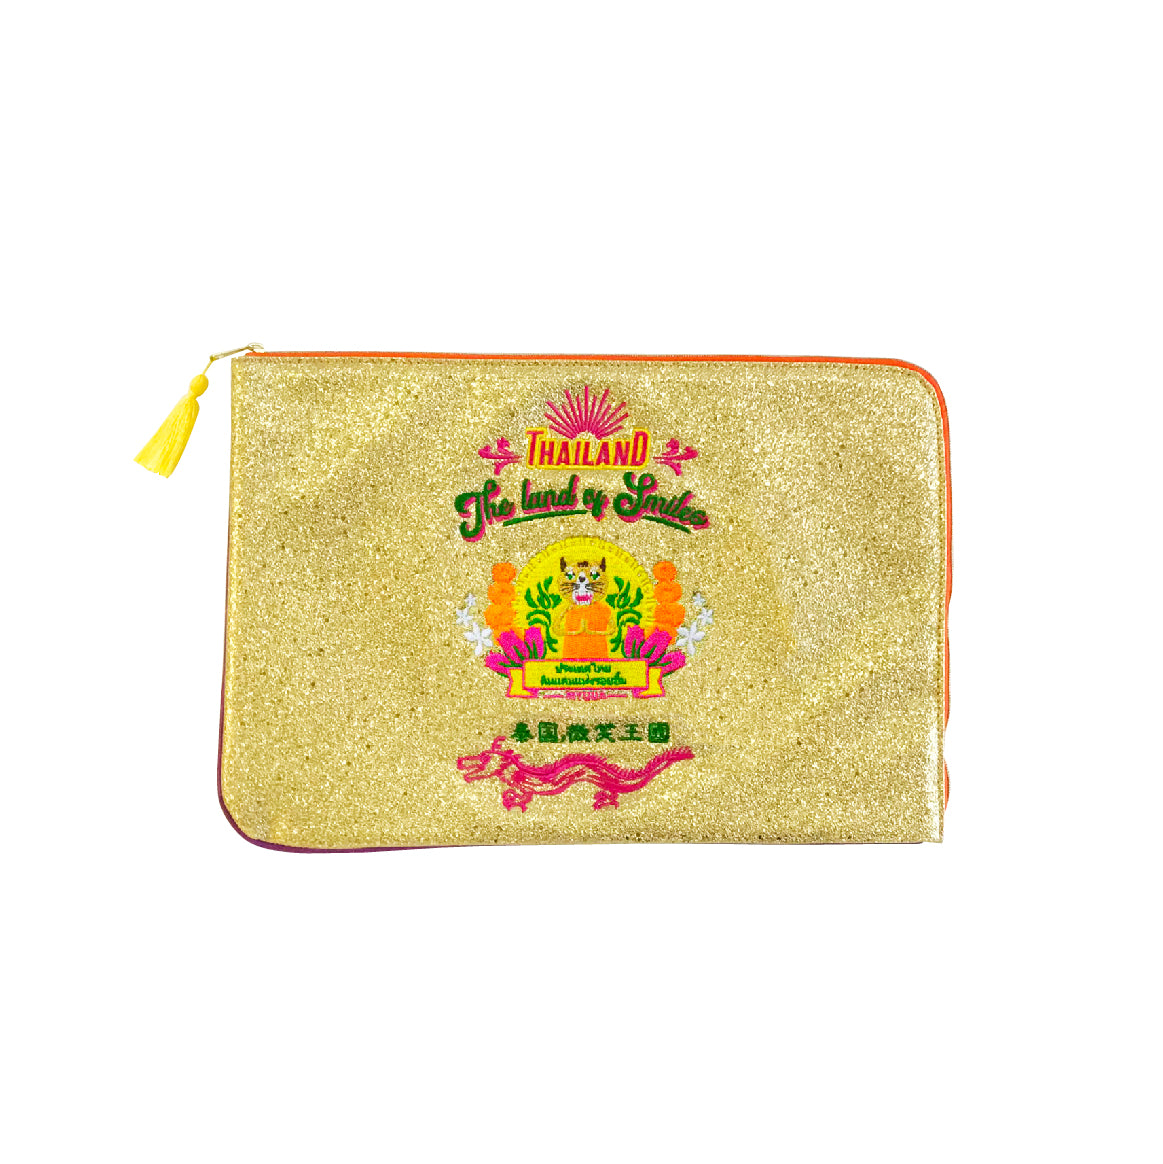 Thai gold clutch bag